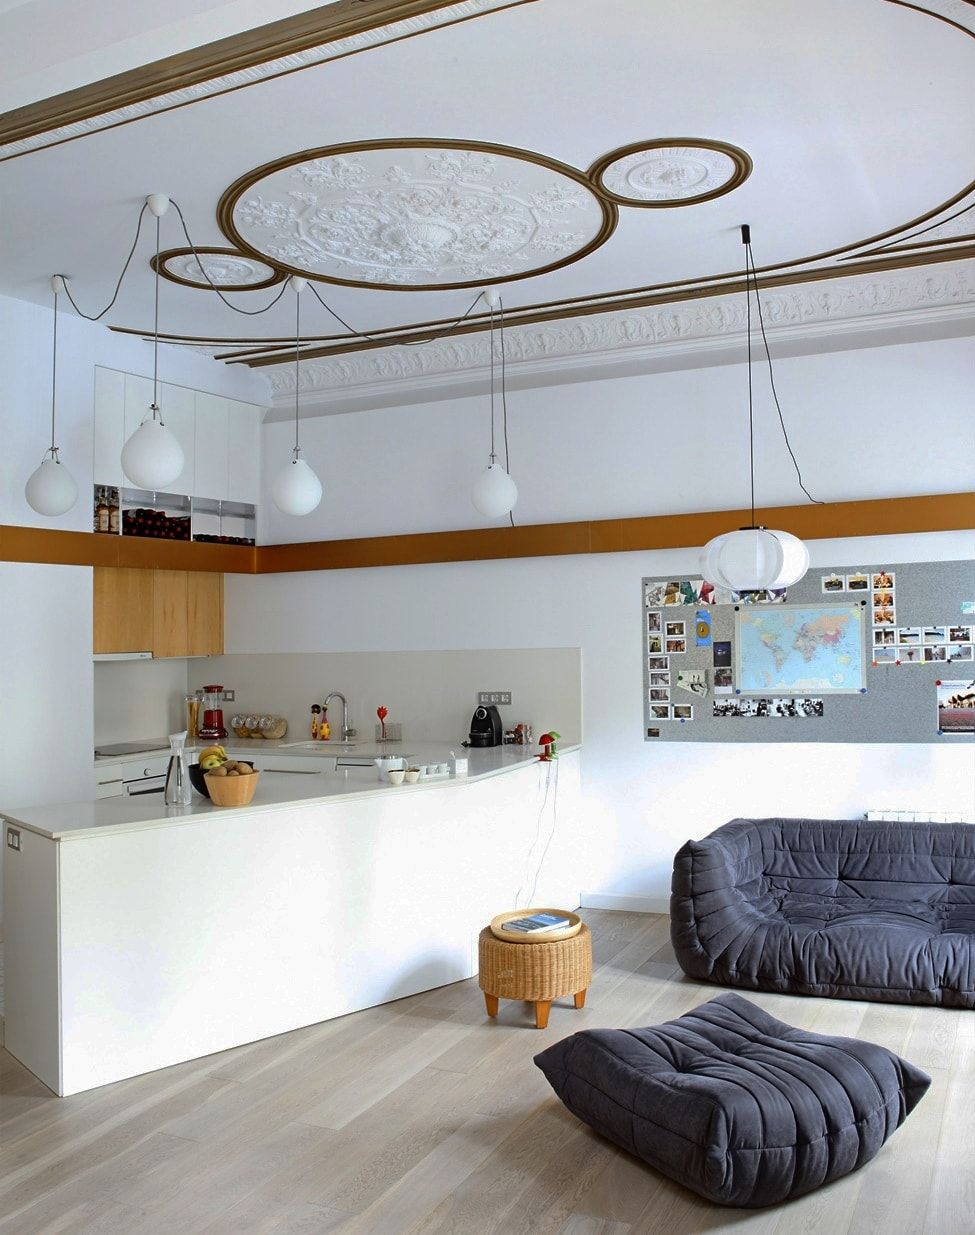 300 Square Feet Kitchen-Living Room Design Ideas with Photos. Классика и дизайн середины века в белом оформленном пространстве